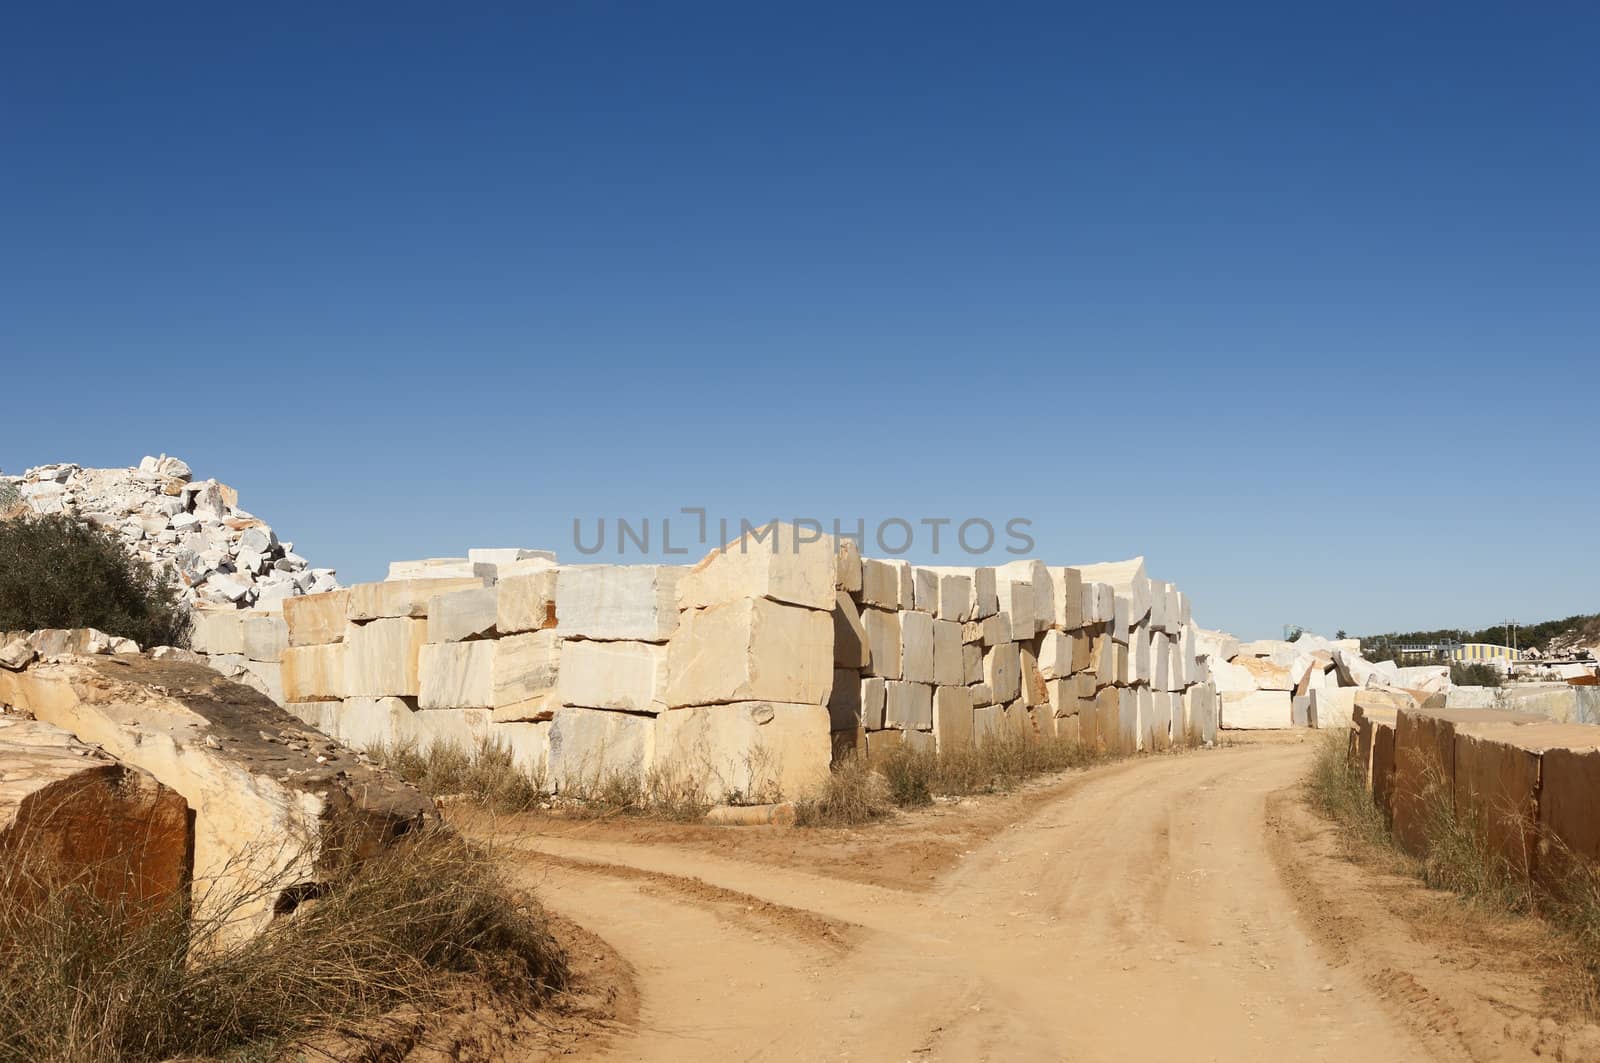 Marble blocks alongside a dirt road in the marble region of Borba, Alentejo, Portugal